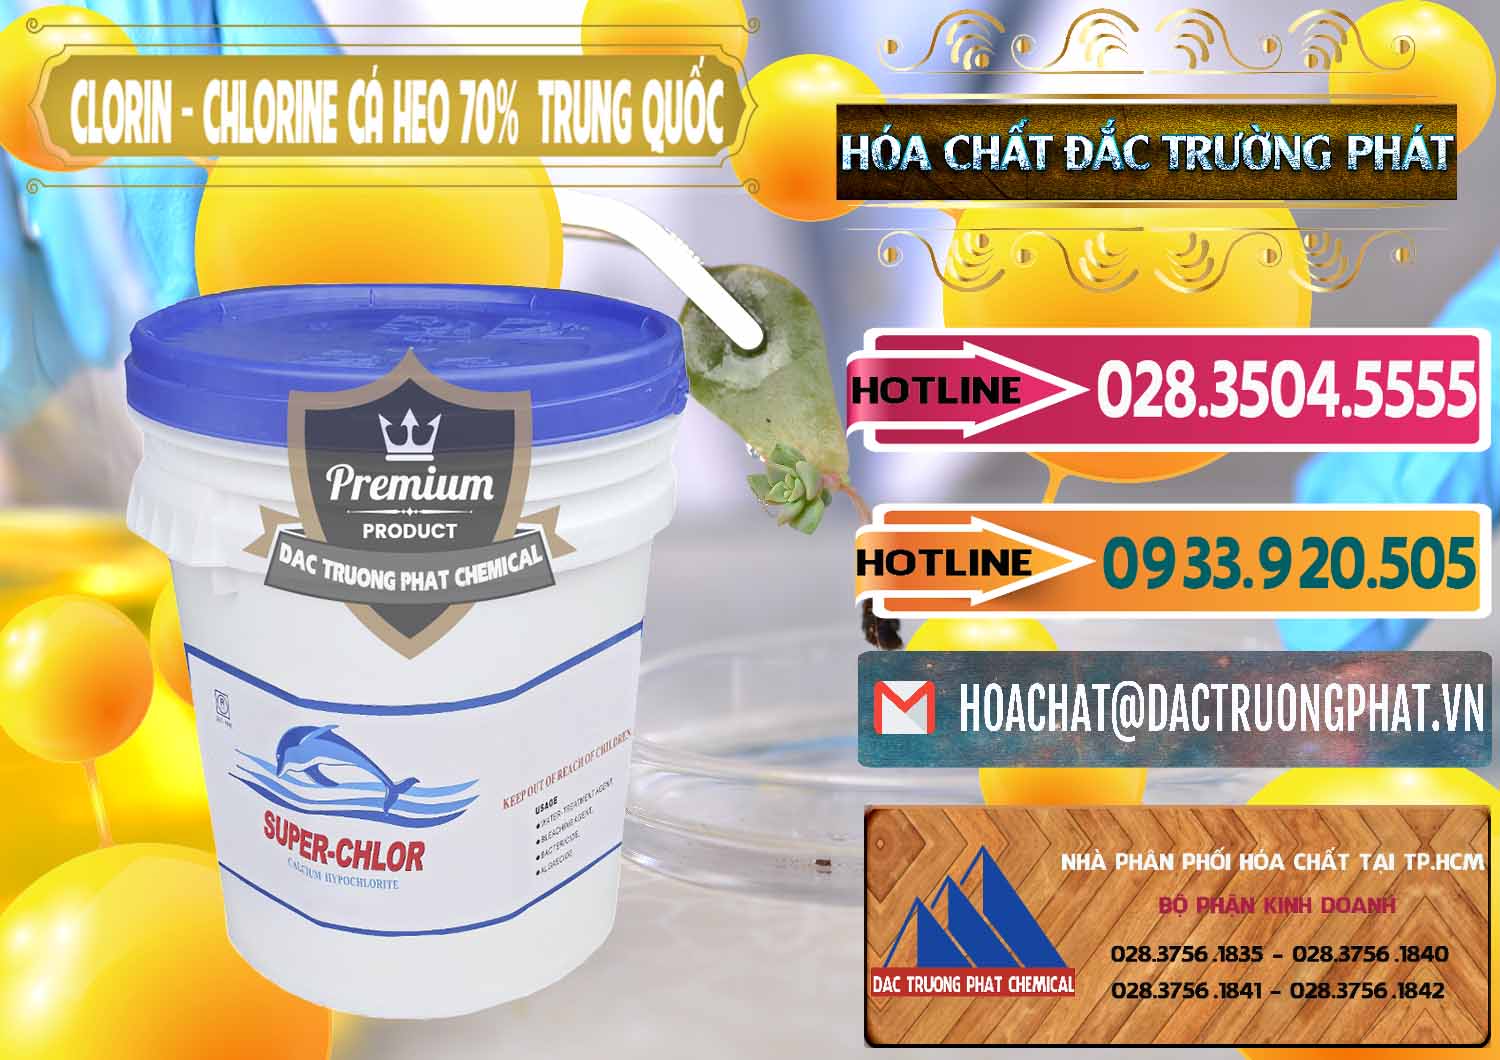 Cty bán & cung ứng Clorin - Chlorine Cá Heo 70% Super Chlor Nắp Xanh Trung Quốc China - 0209 - Cty chuyên phân phối ( cung ứng ) hóa chất tại TP.HCM - dactruongphat.vn